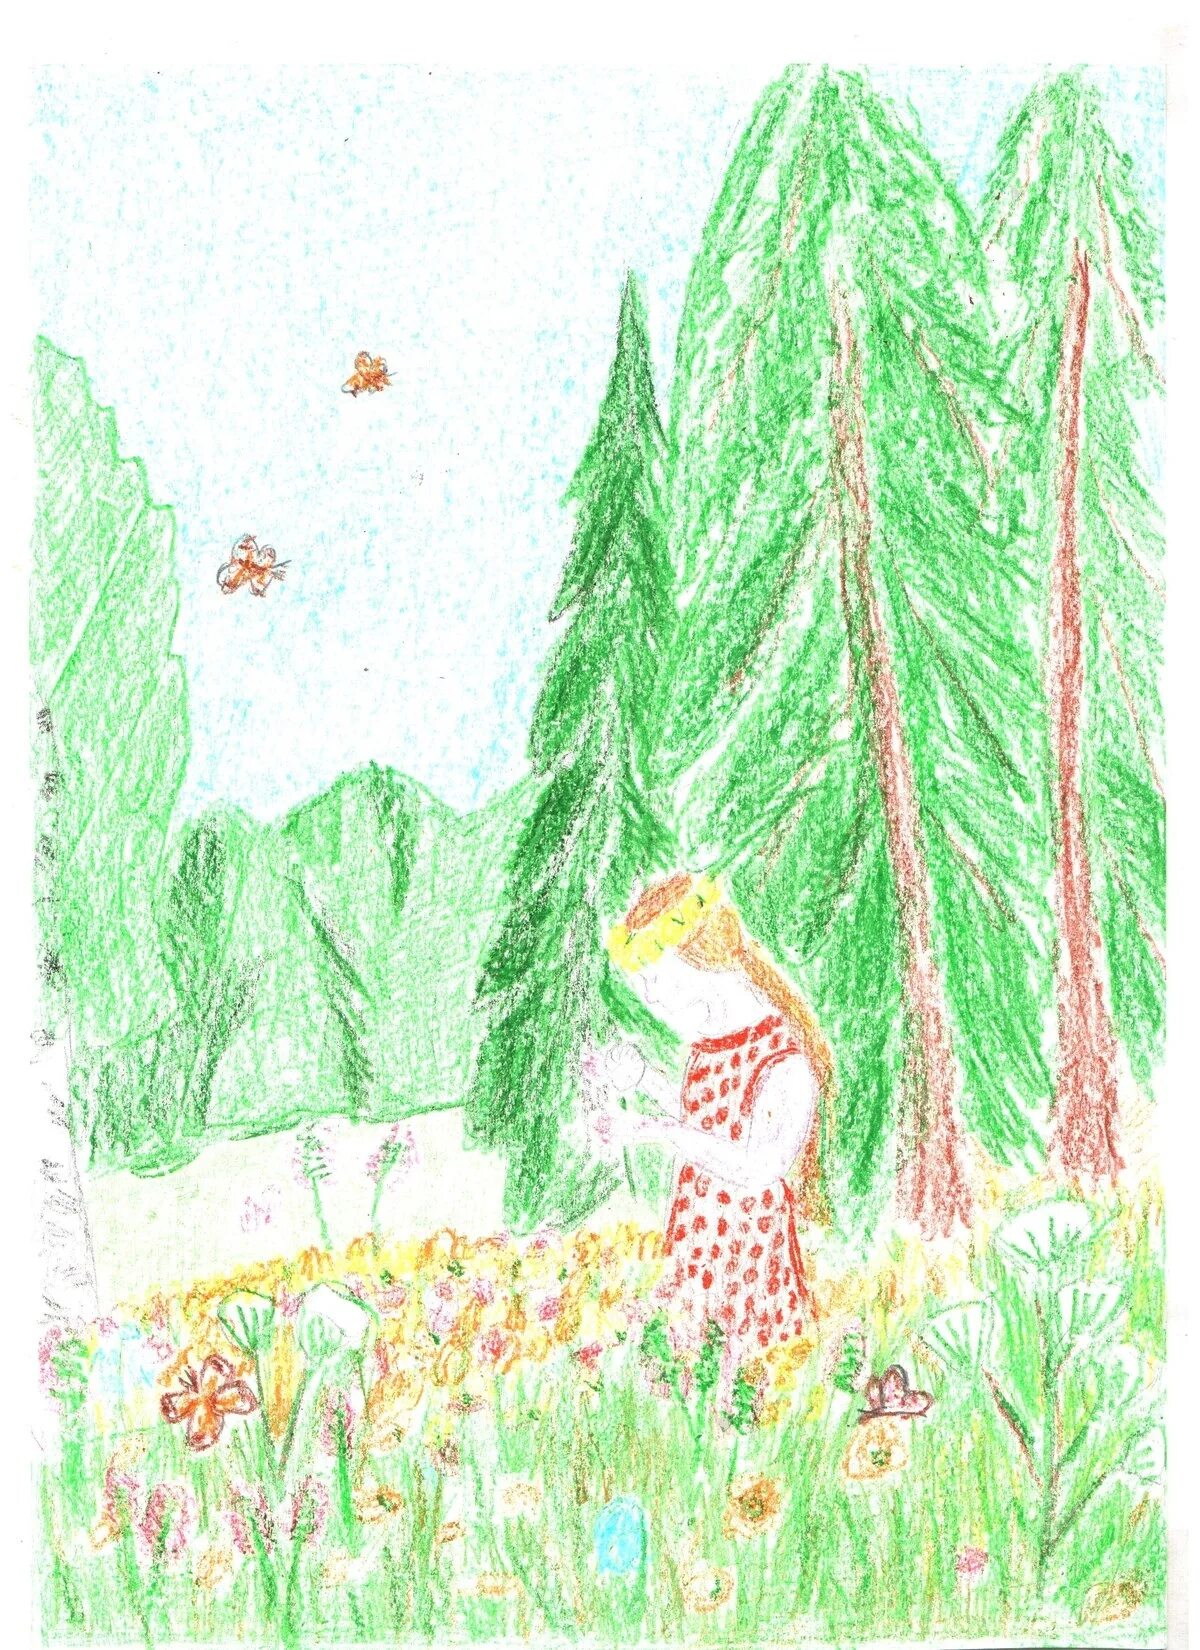 Иллюстрация васюткино озеро 5 класс рисунок. Иллюстрация к эпизоду Васюткино озеро. Иллюстрация к рассказу Васюткино озеро. Пришвин кладовая солнца иллюстрации. Иллюстрация нарисовать иллюстрацию по Васюткино озеро.